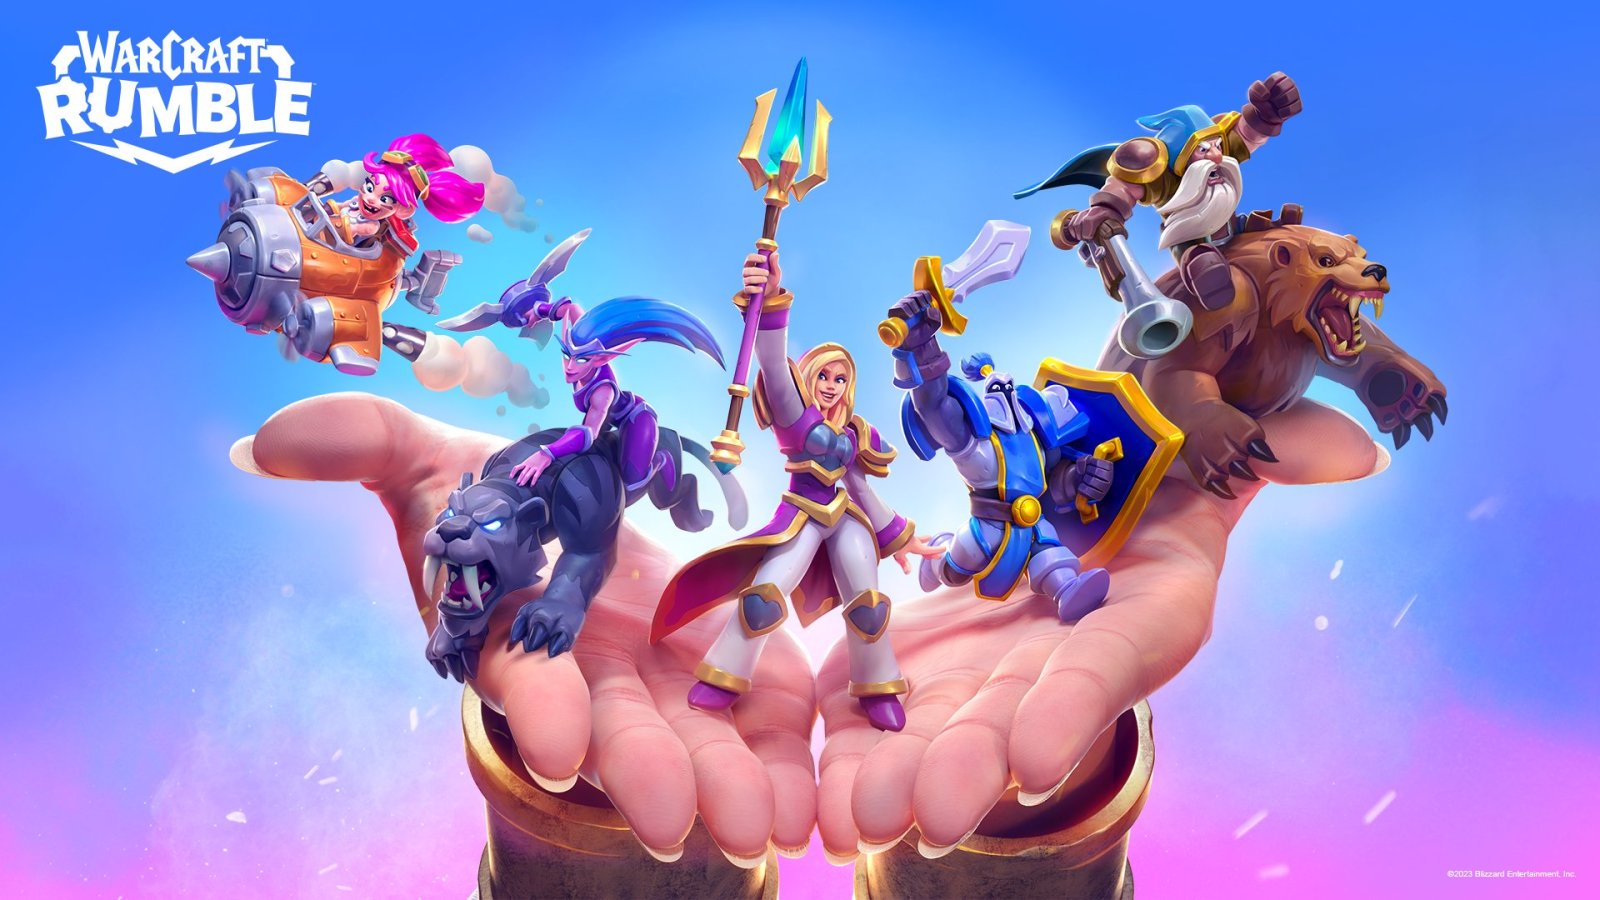 Warcraft Rumble เกมกลยุทธ์ใหม่จาก Blizzard จะเปิดให้เล่นพฤศจิกายนนี้